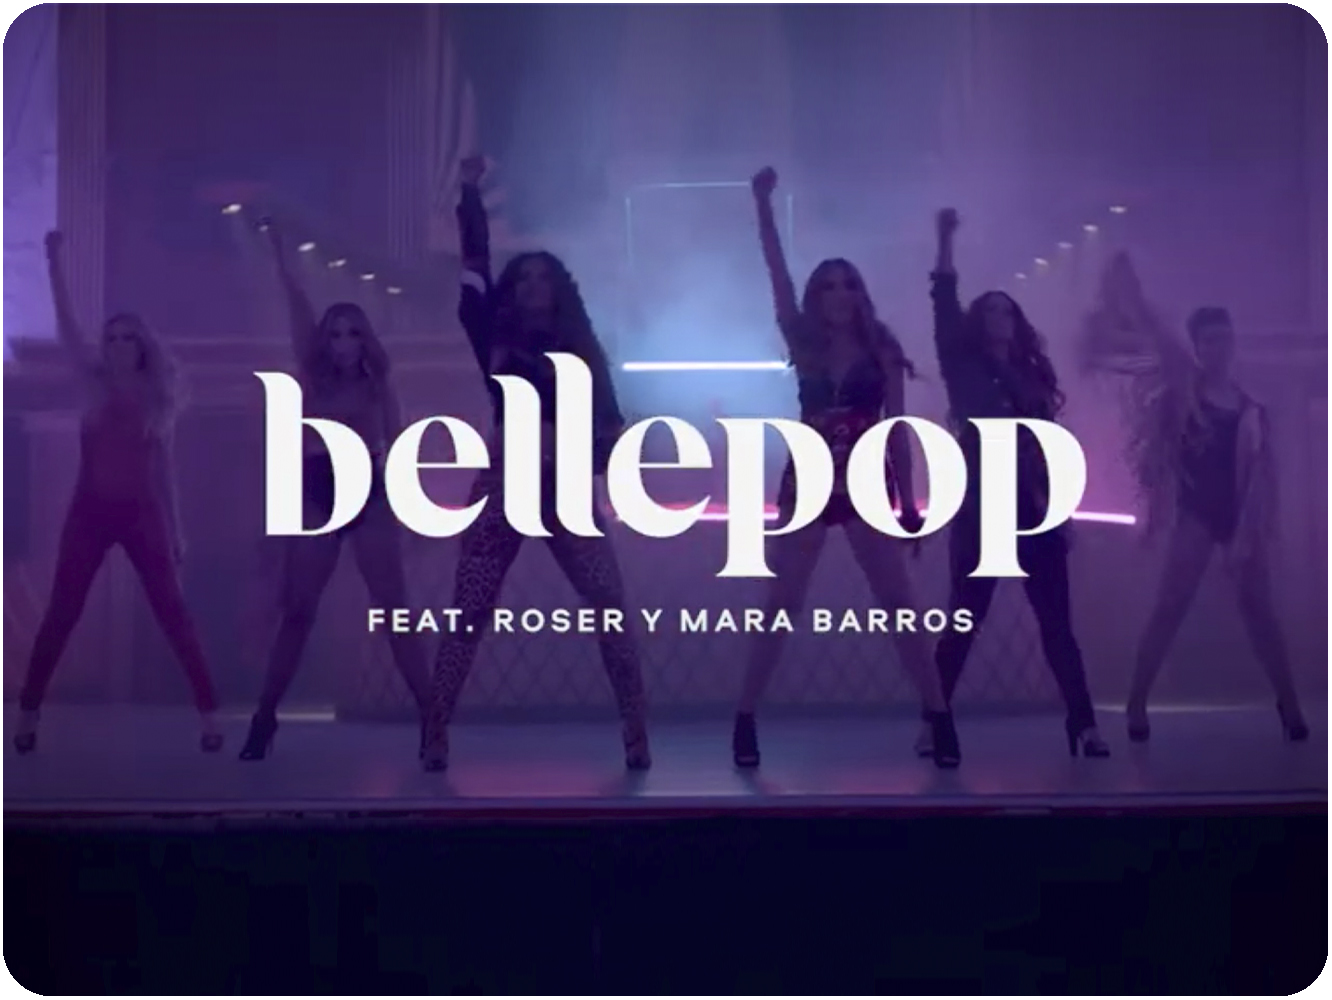  Bellepop vuelven con ‘We Represent’, que anuncian con tiempo para que vayamos haciéndonos a la idea